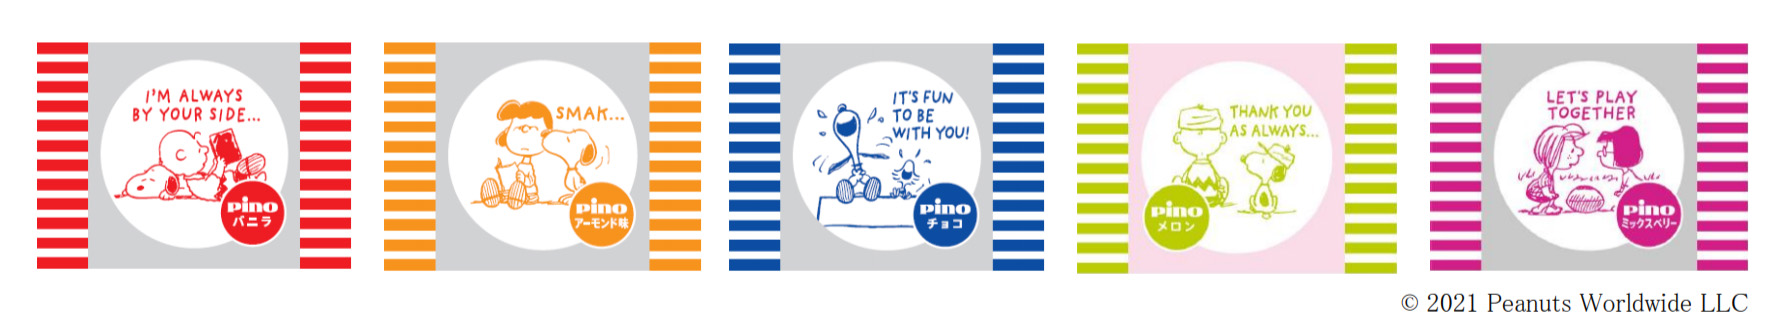 「ピノ チョコアソート」「ピノ シーズンアソート」個包装フィルムのデザイン例